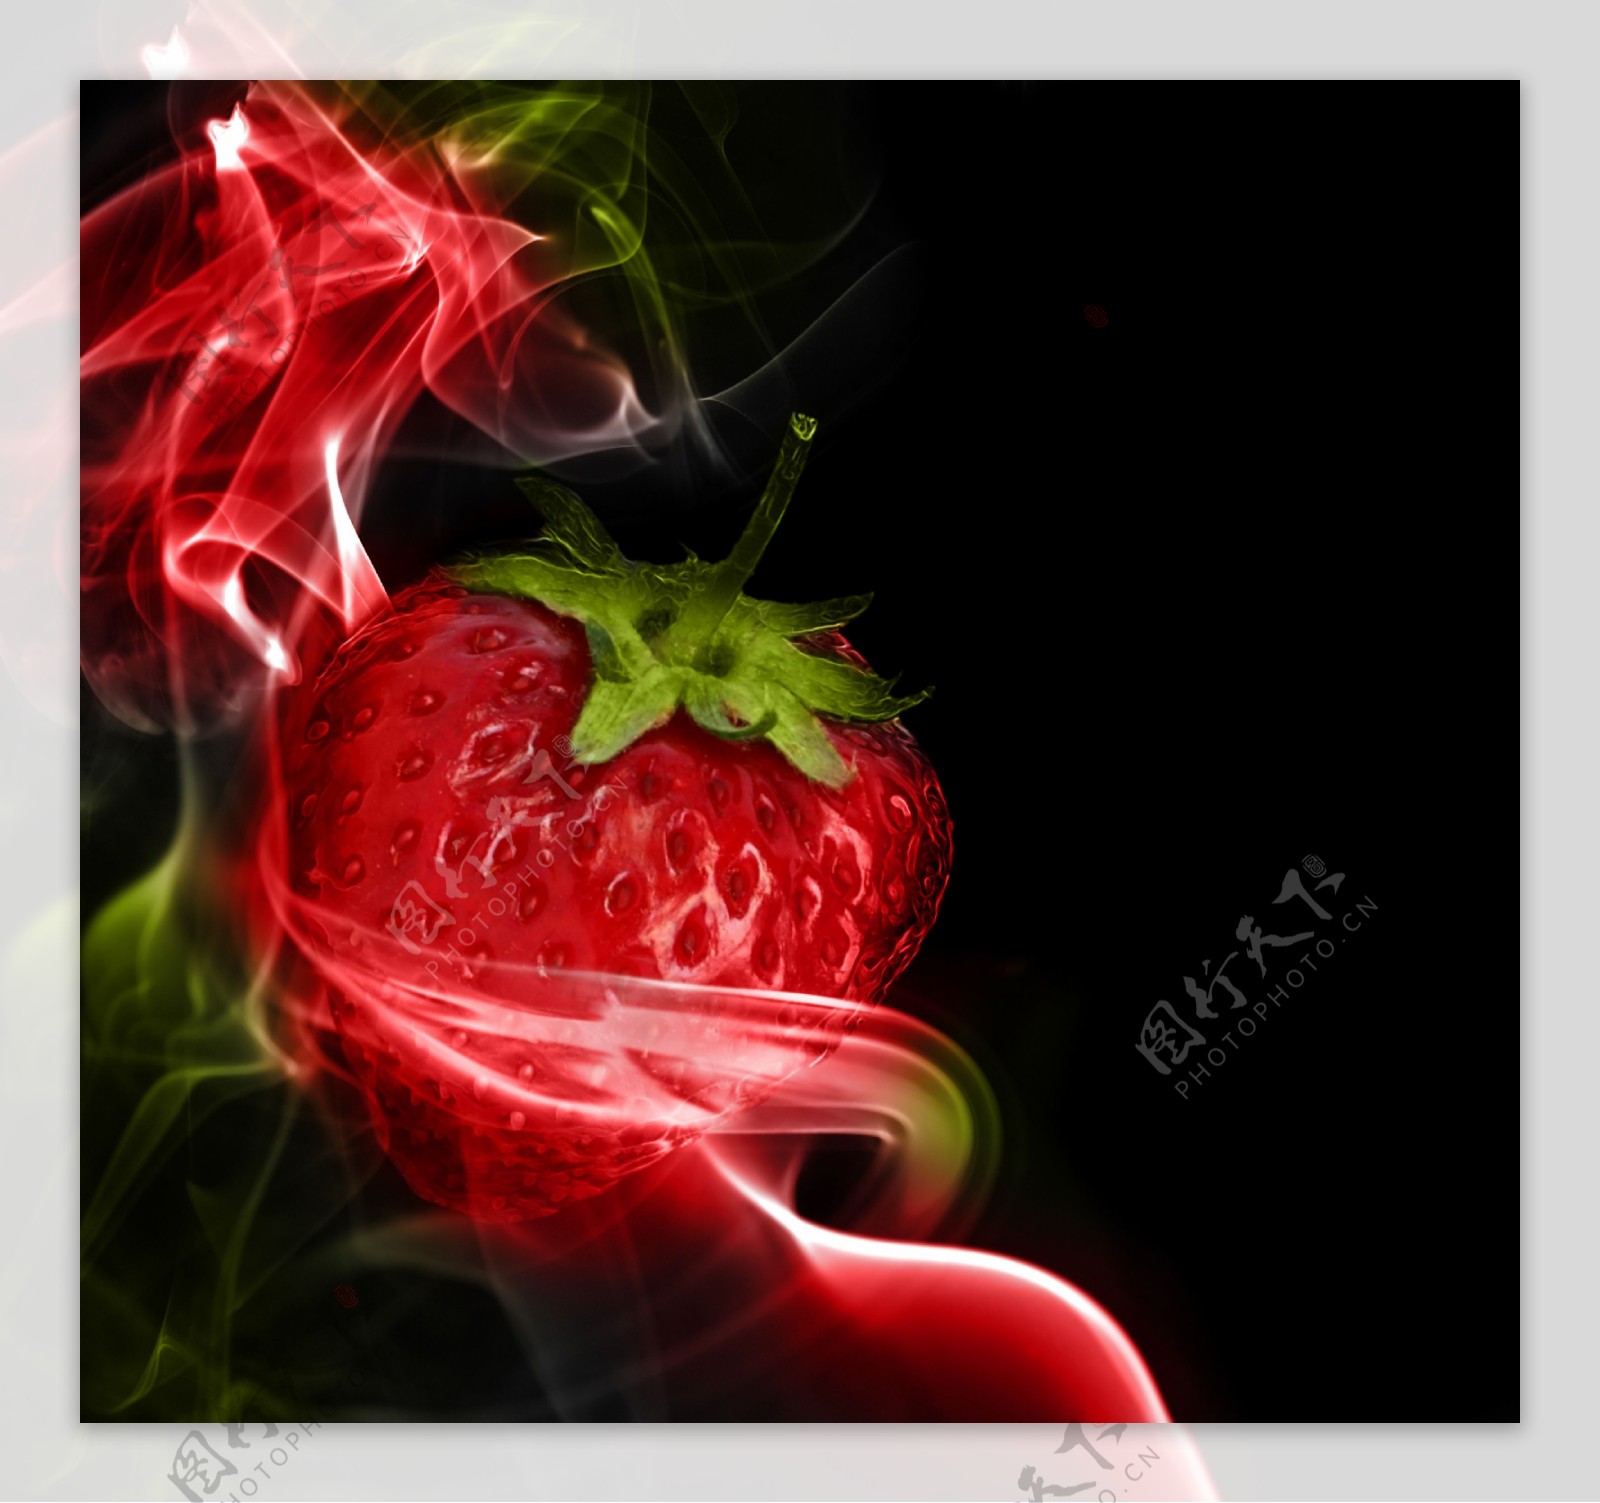 新鲜草莓与烟雾图片